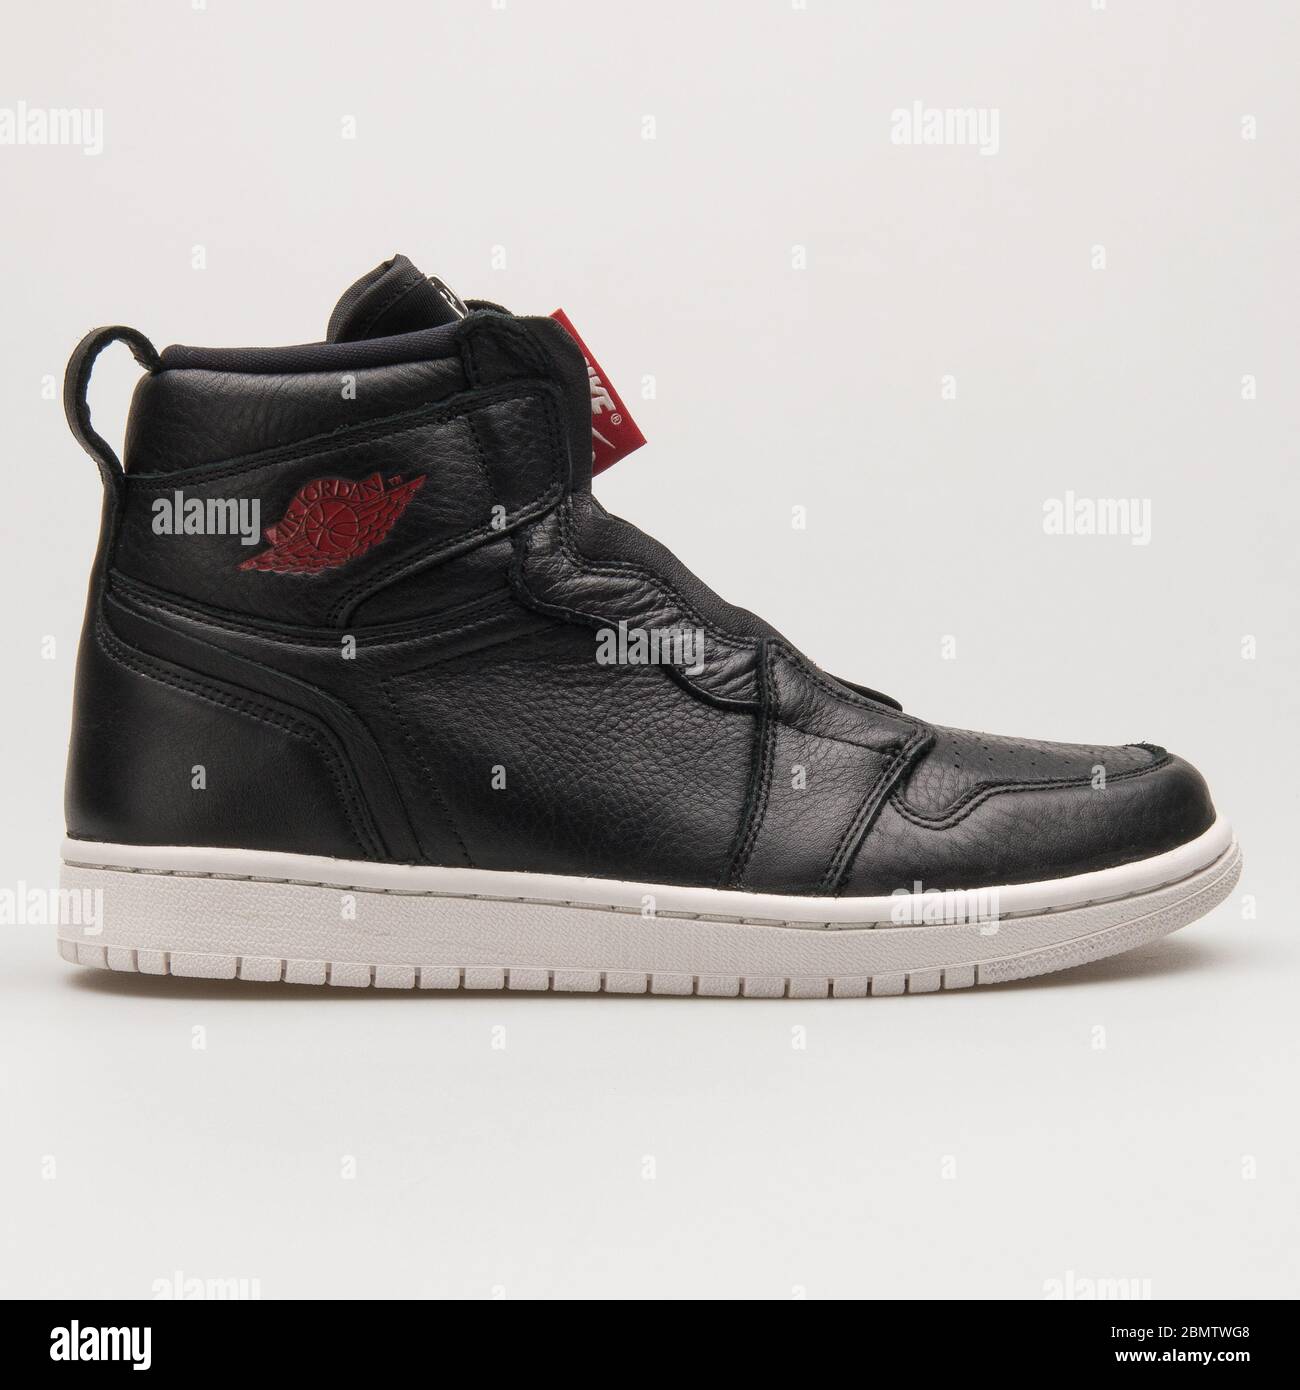 WIEN, ÖSTERREICH - 14. JUNI 2018: Nike Air Jordan 1 High Zip Premium  Sneaker in Schwarz, Rot und Weiß auf weißem Hintergrund Stockfotografie -  Alamy